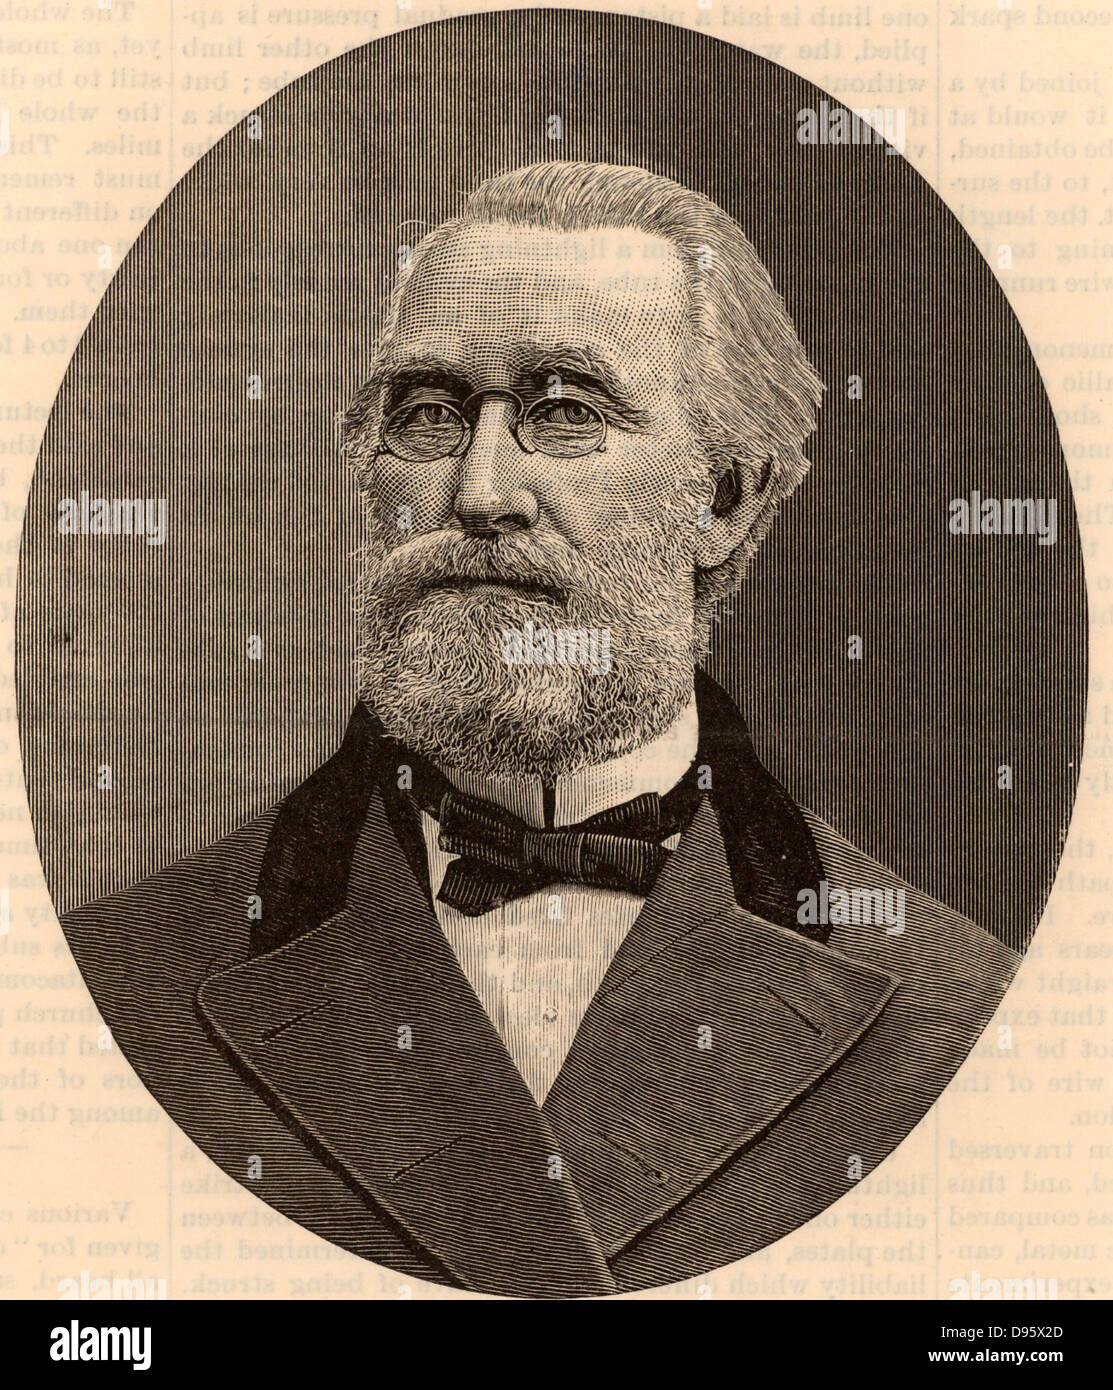 Thomas l'argent (1813-1888), ingénieur civil américain né dans le comté de Cumberland, New Jersey Banque D'Images